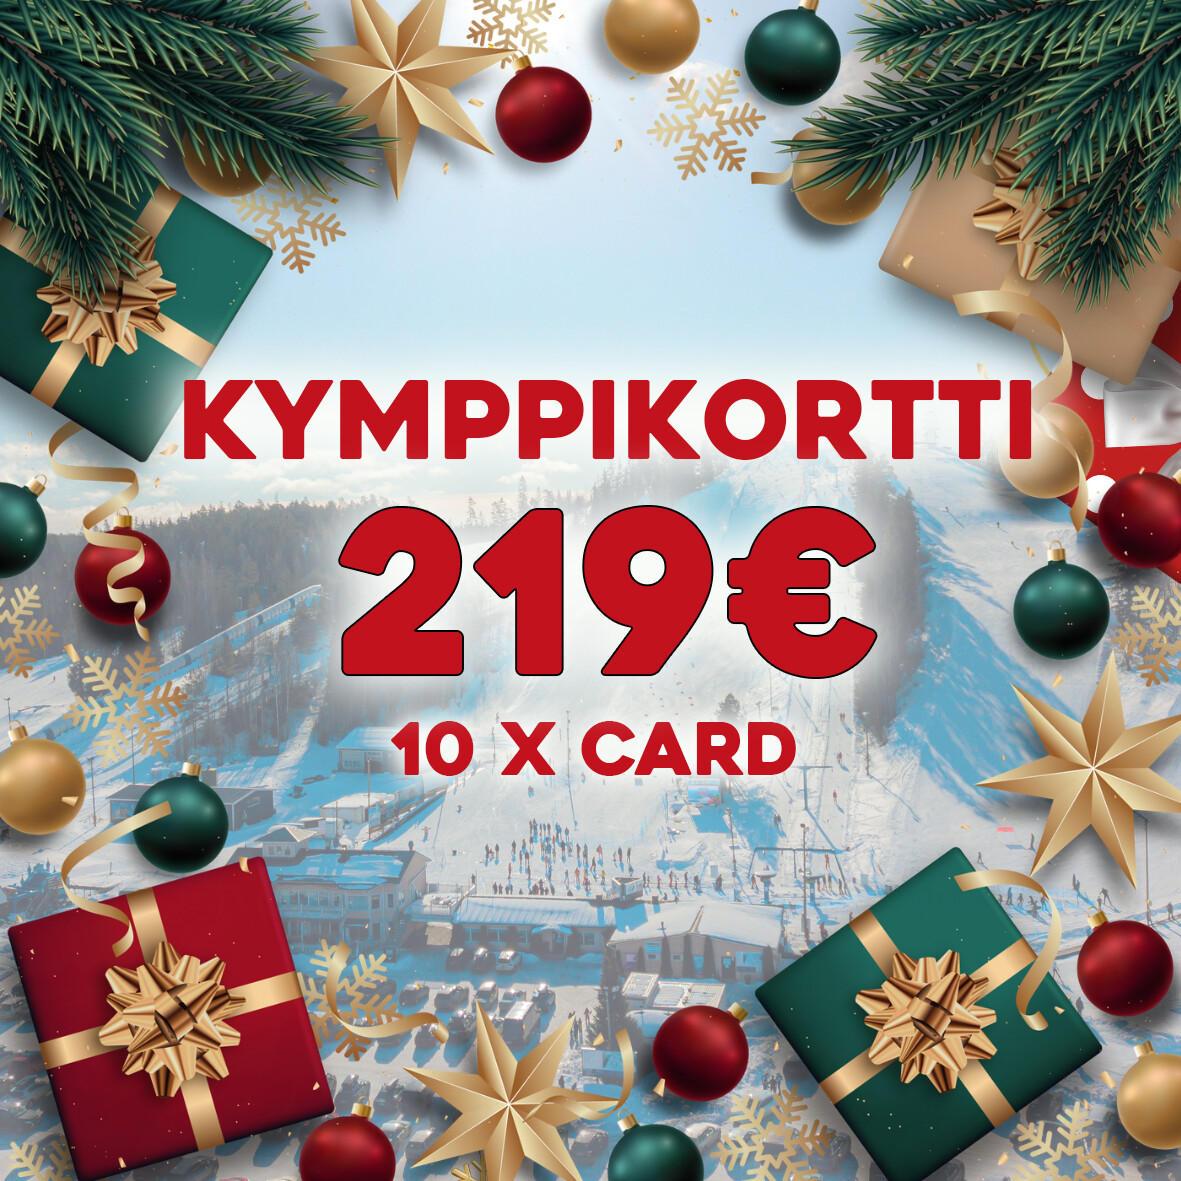 Joulutarjous Kymppikortti 219€ (norm. 249€)